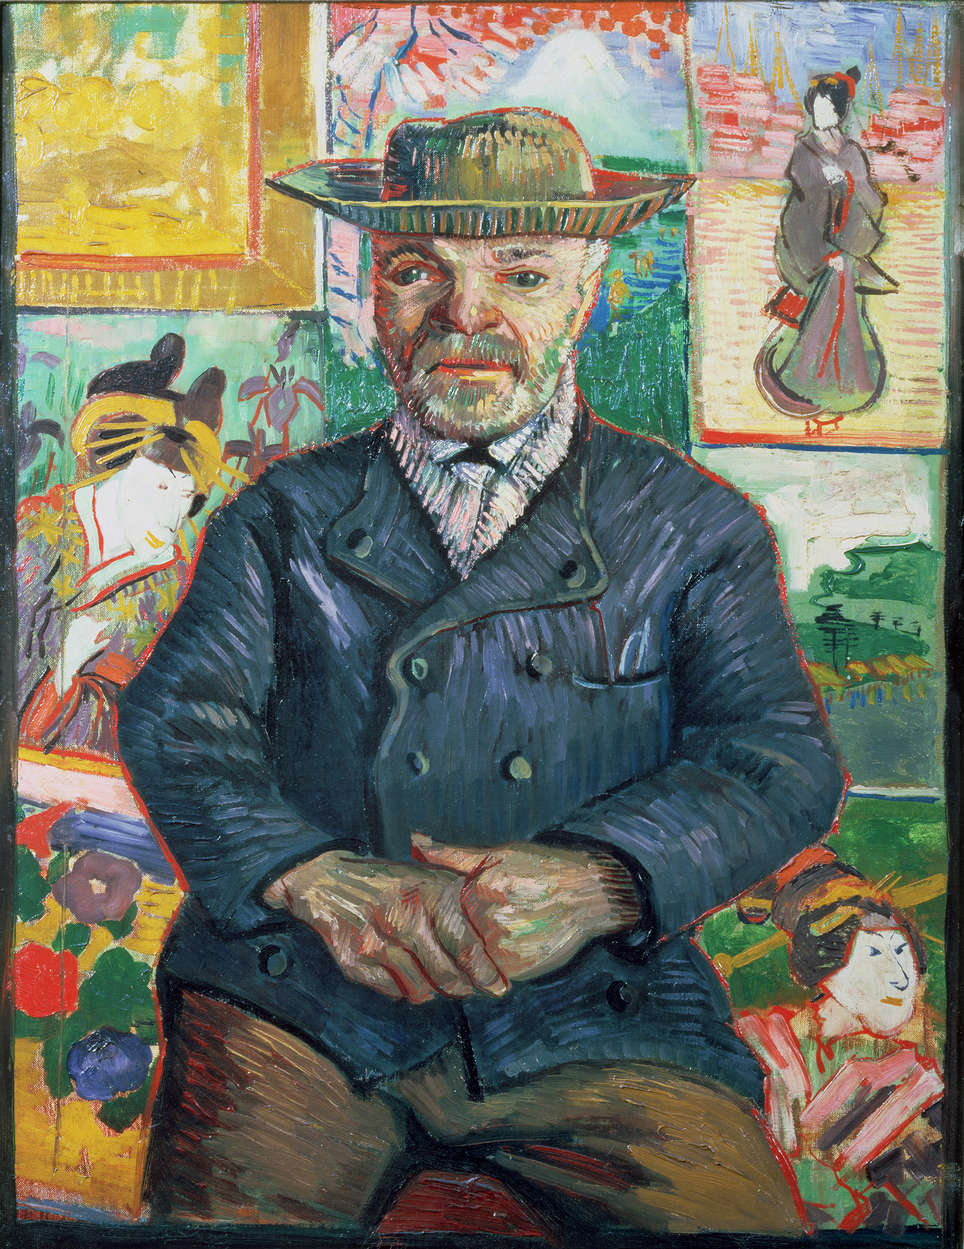             Pere Tanguy" muurschildering door Vincent van Gogh
        